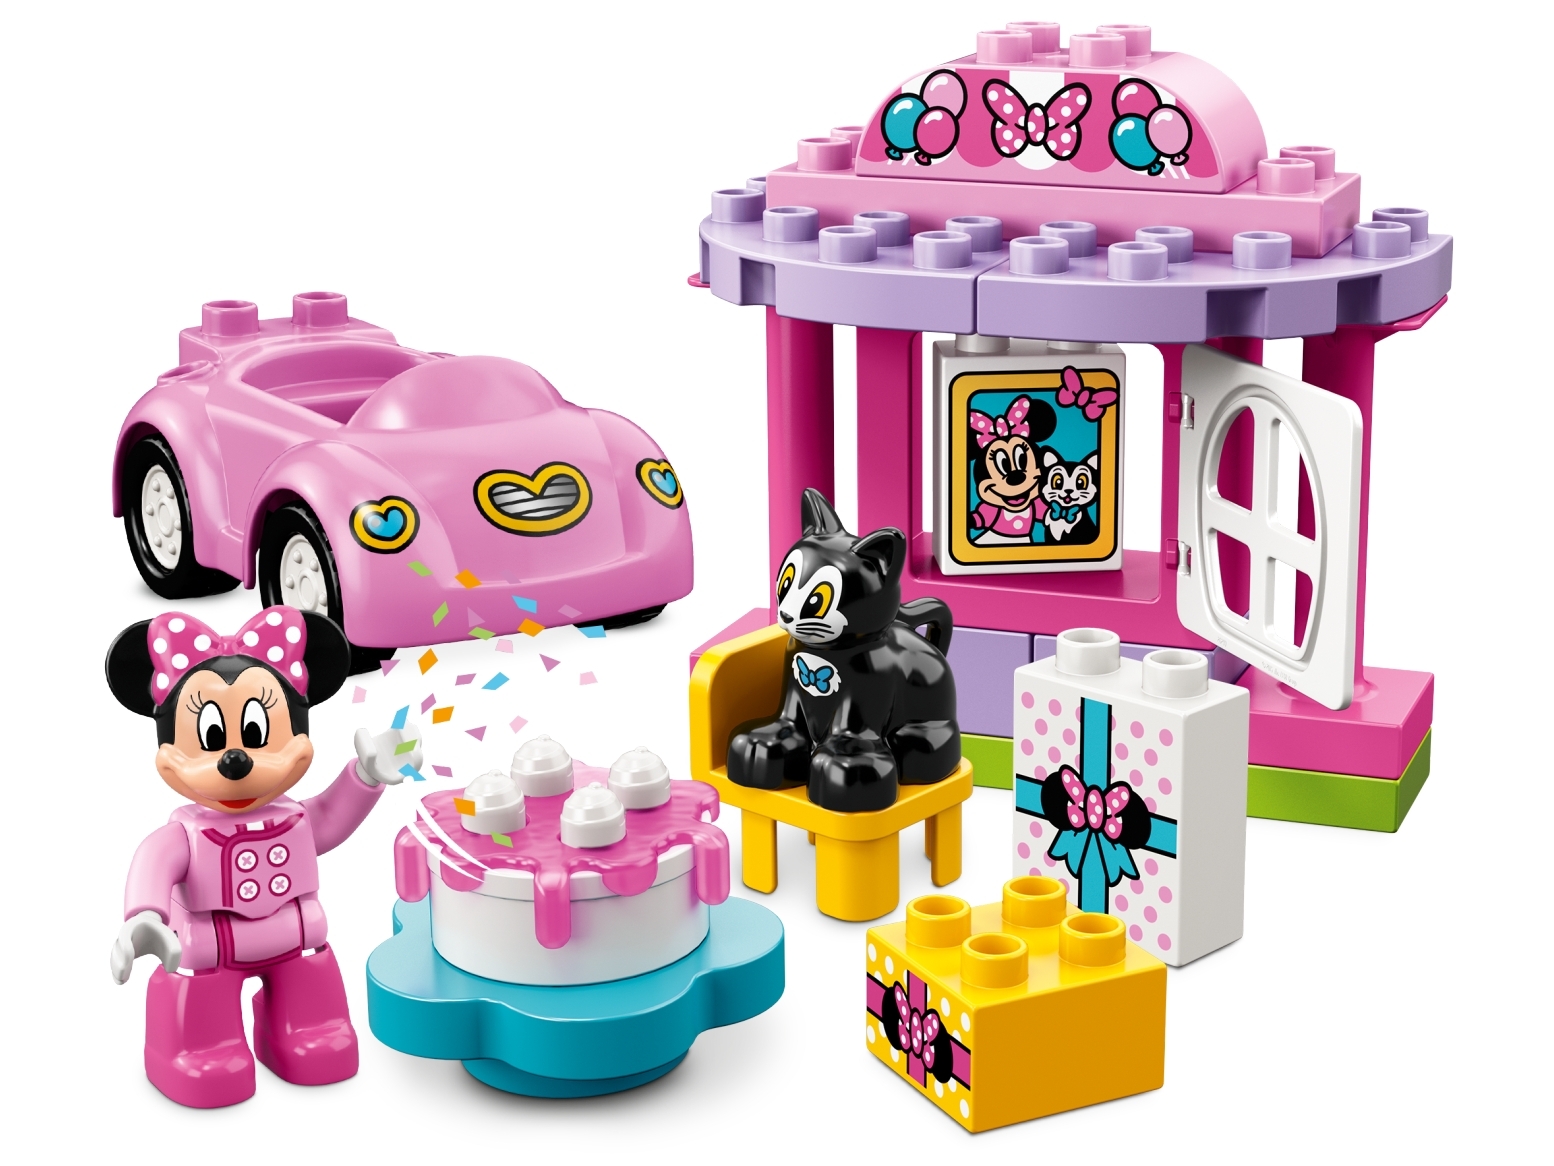 La Fete D Anniversaire De Minnie Disney Boutique Lego Officielle Fr